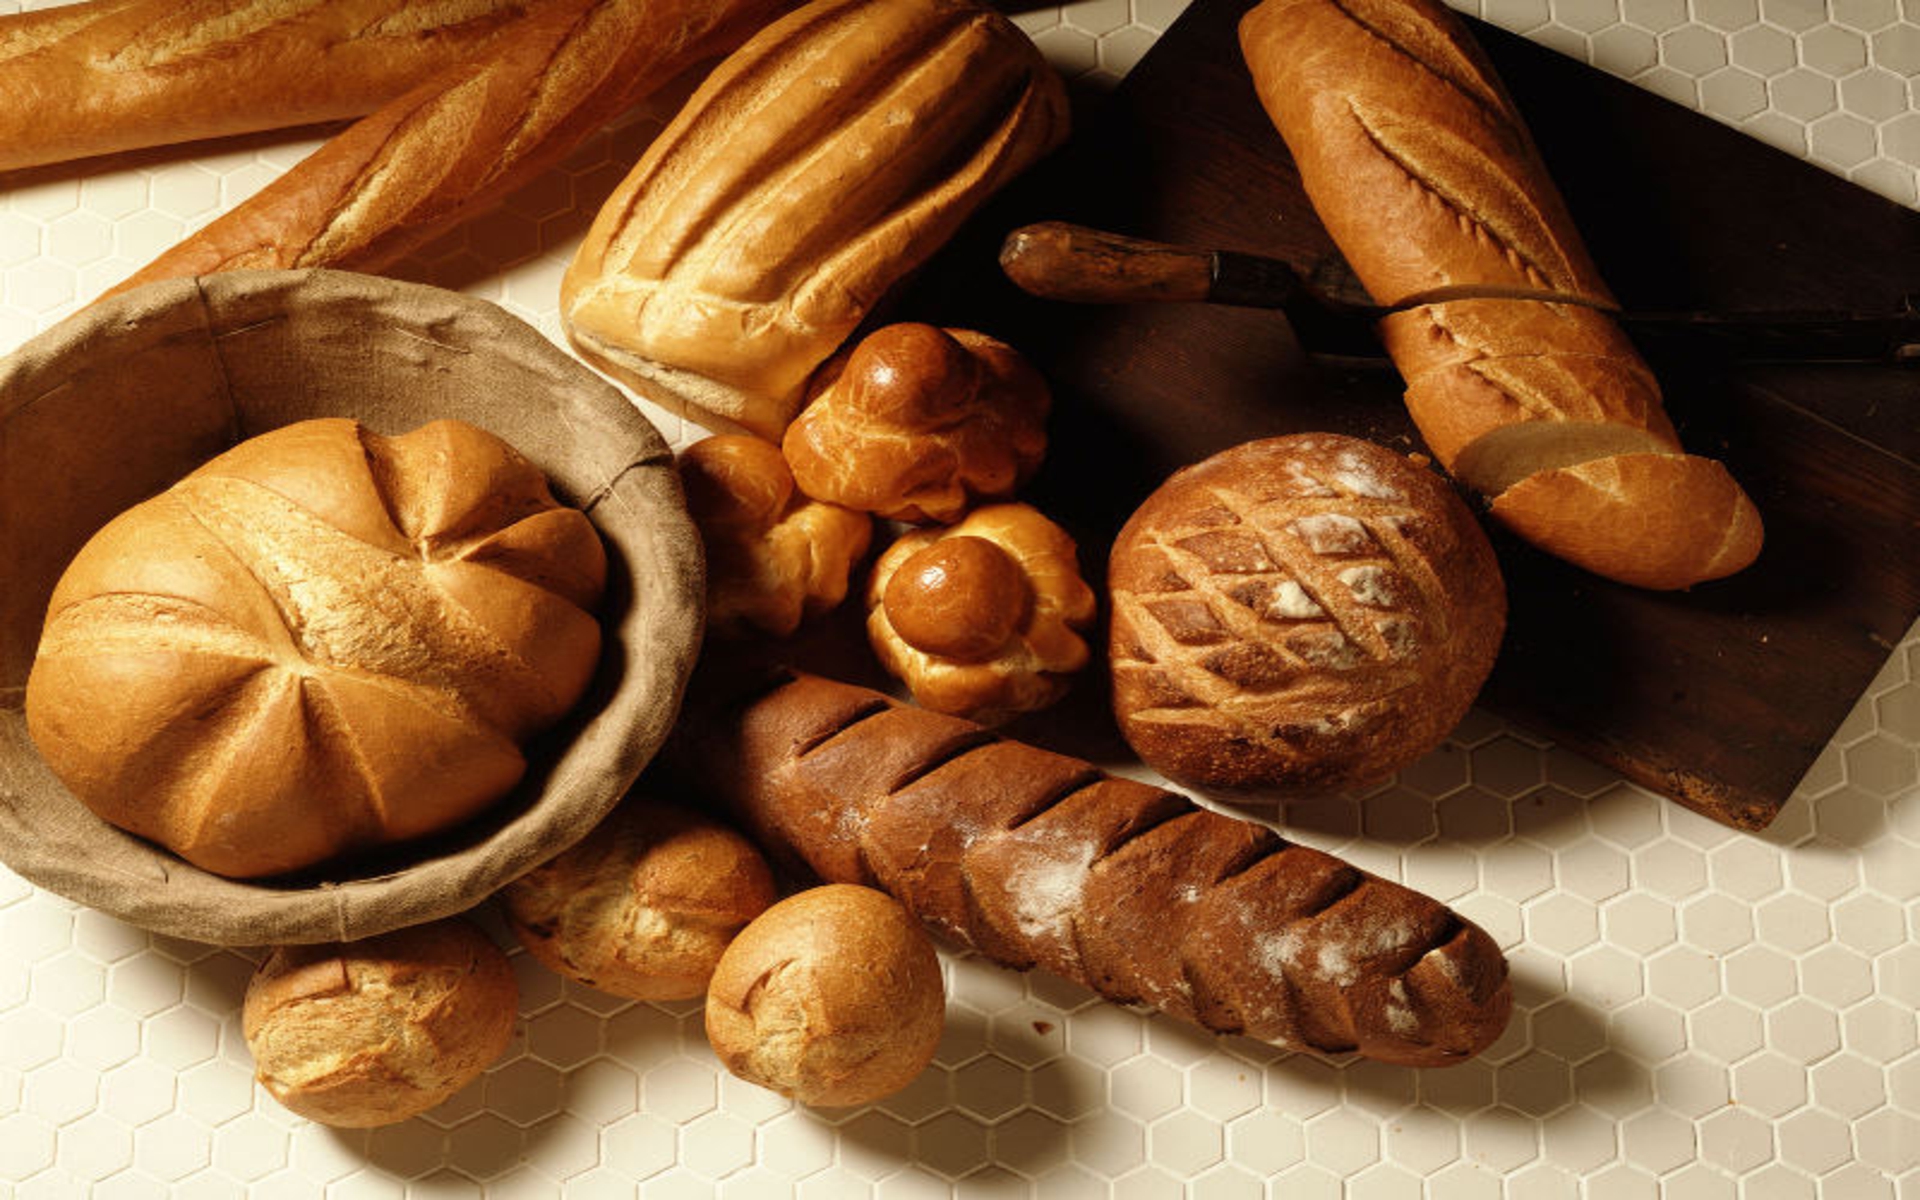 قصص مدهشة عن الخبز الفرنسي.. كيف أصبح رمزا للجنون؟